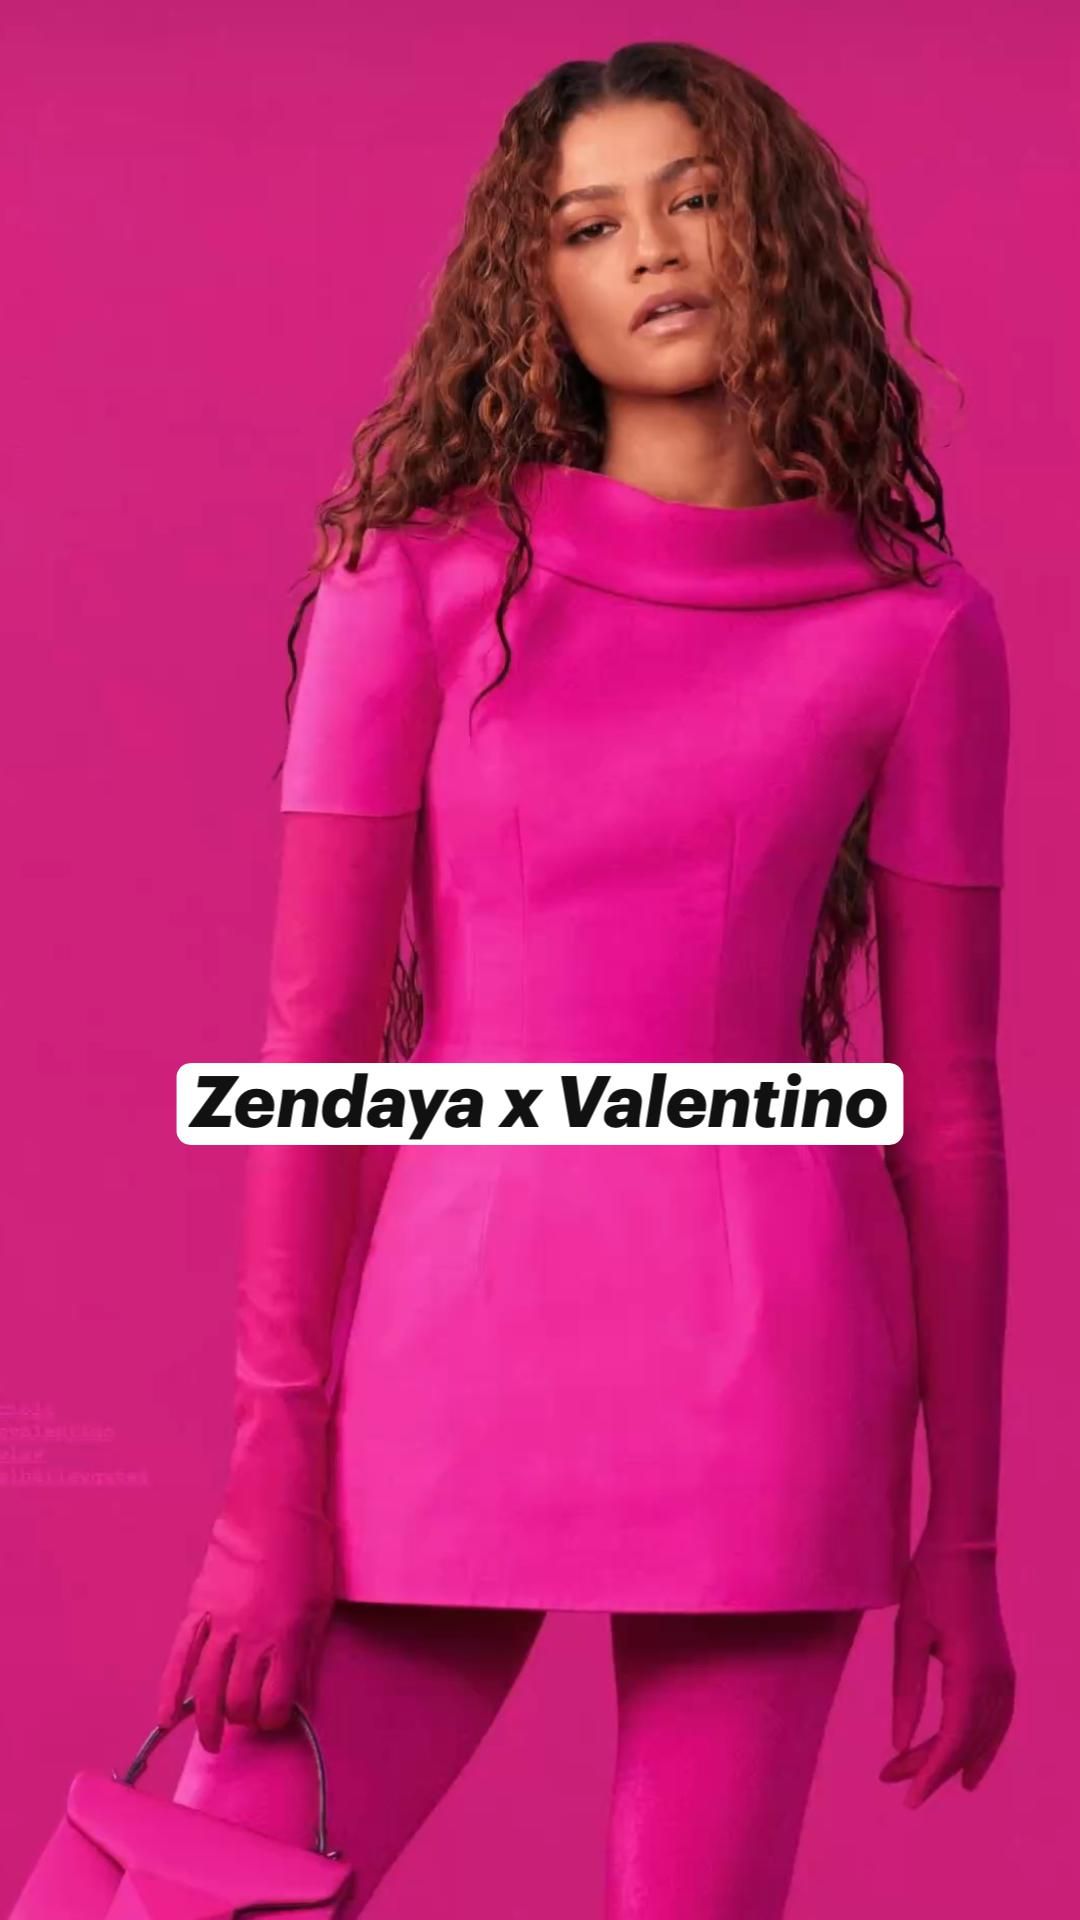 Zendaya Valentino 2022 Wallpapers